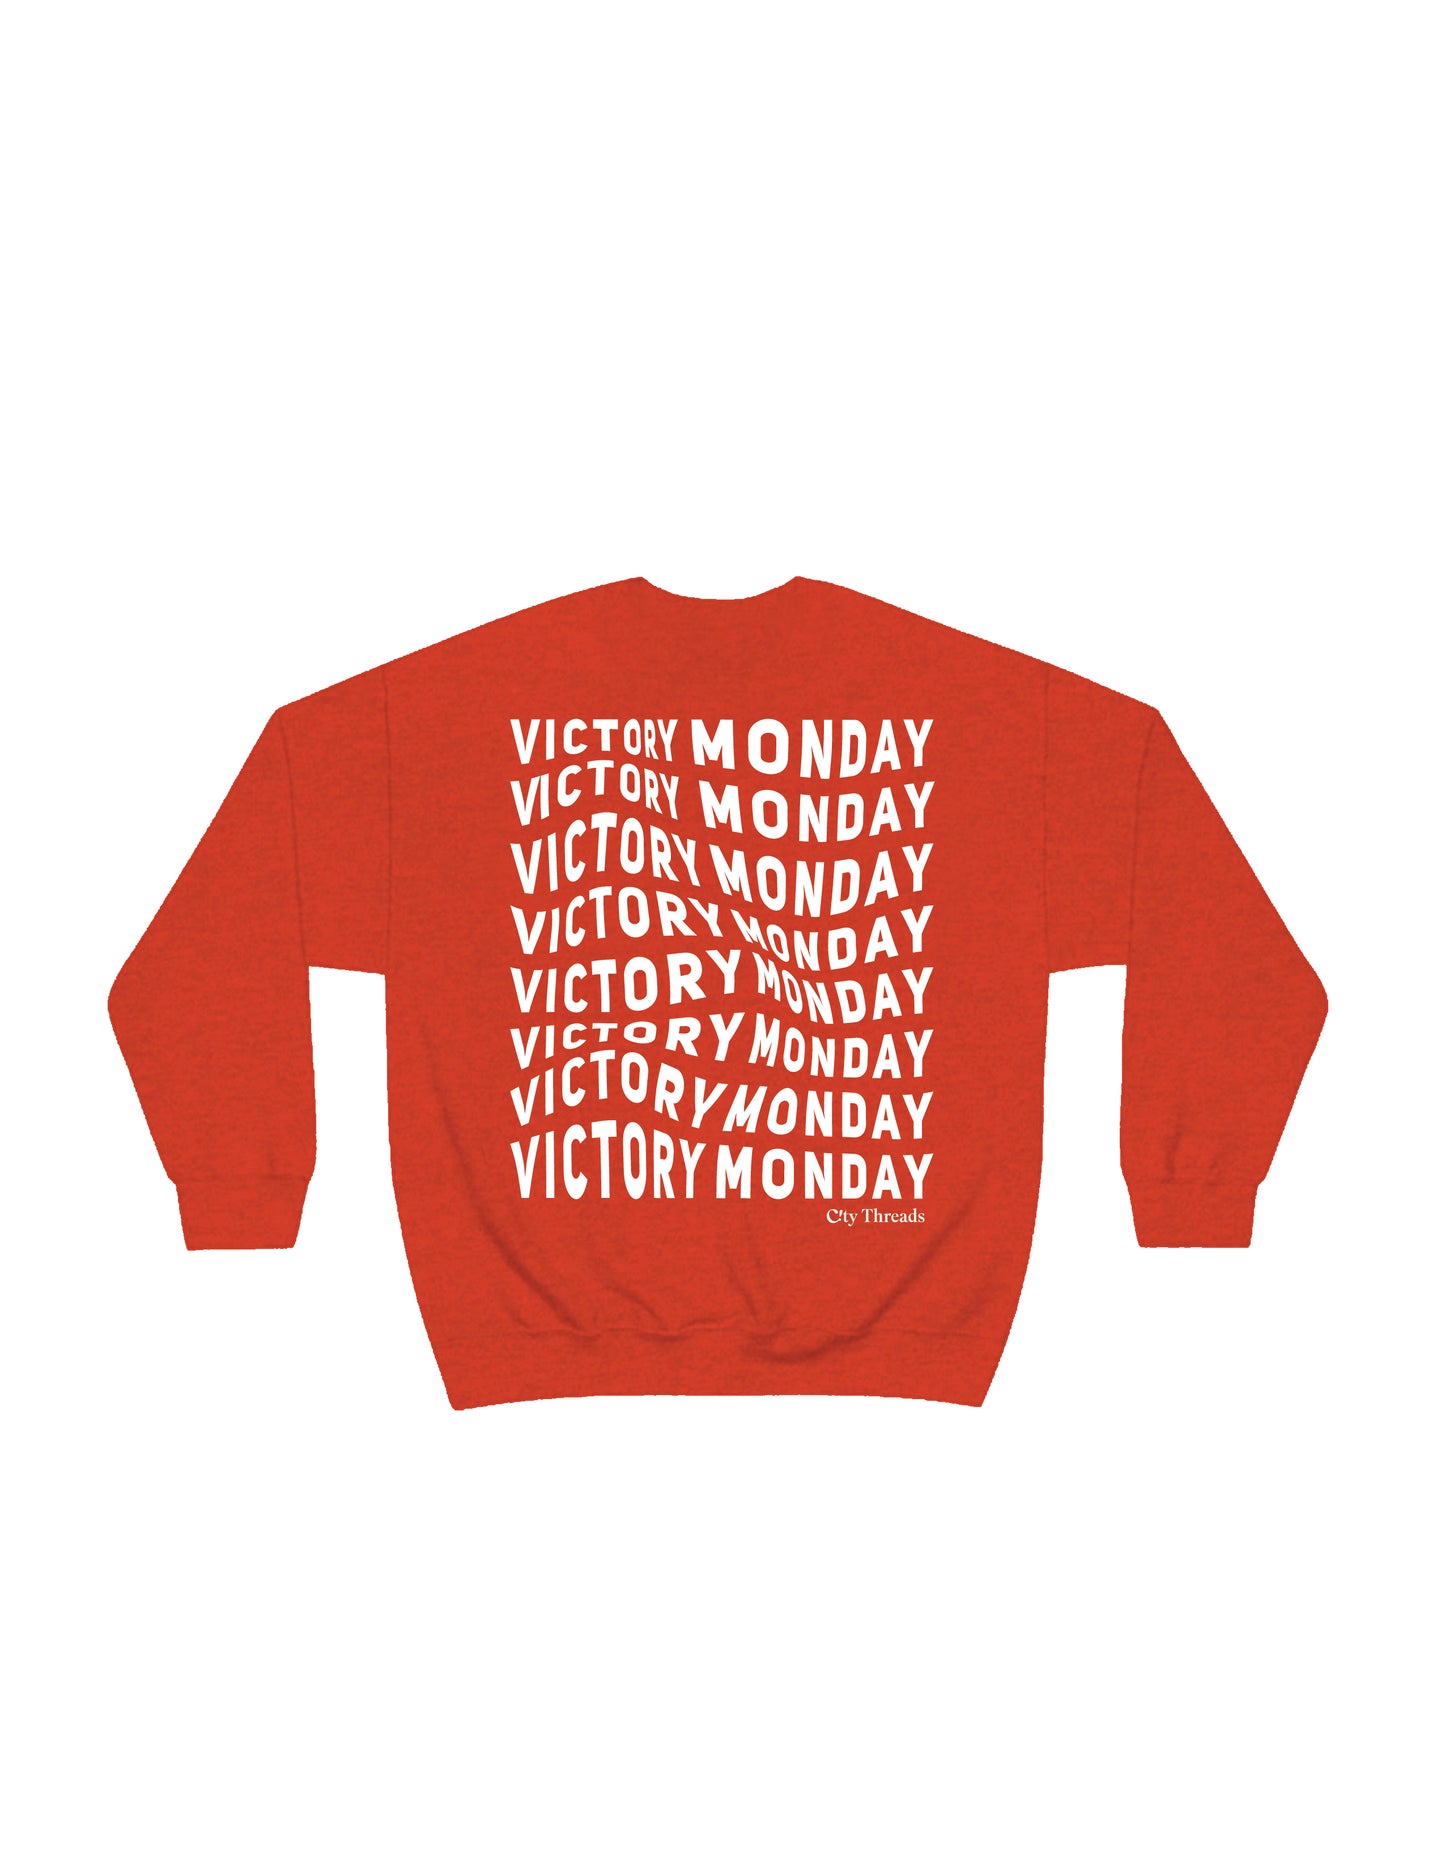 Victory Monday Sweatshirt